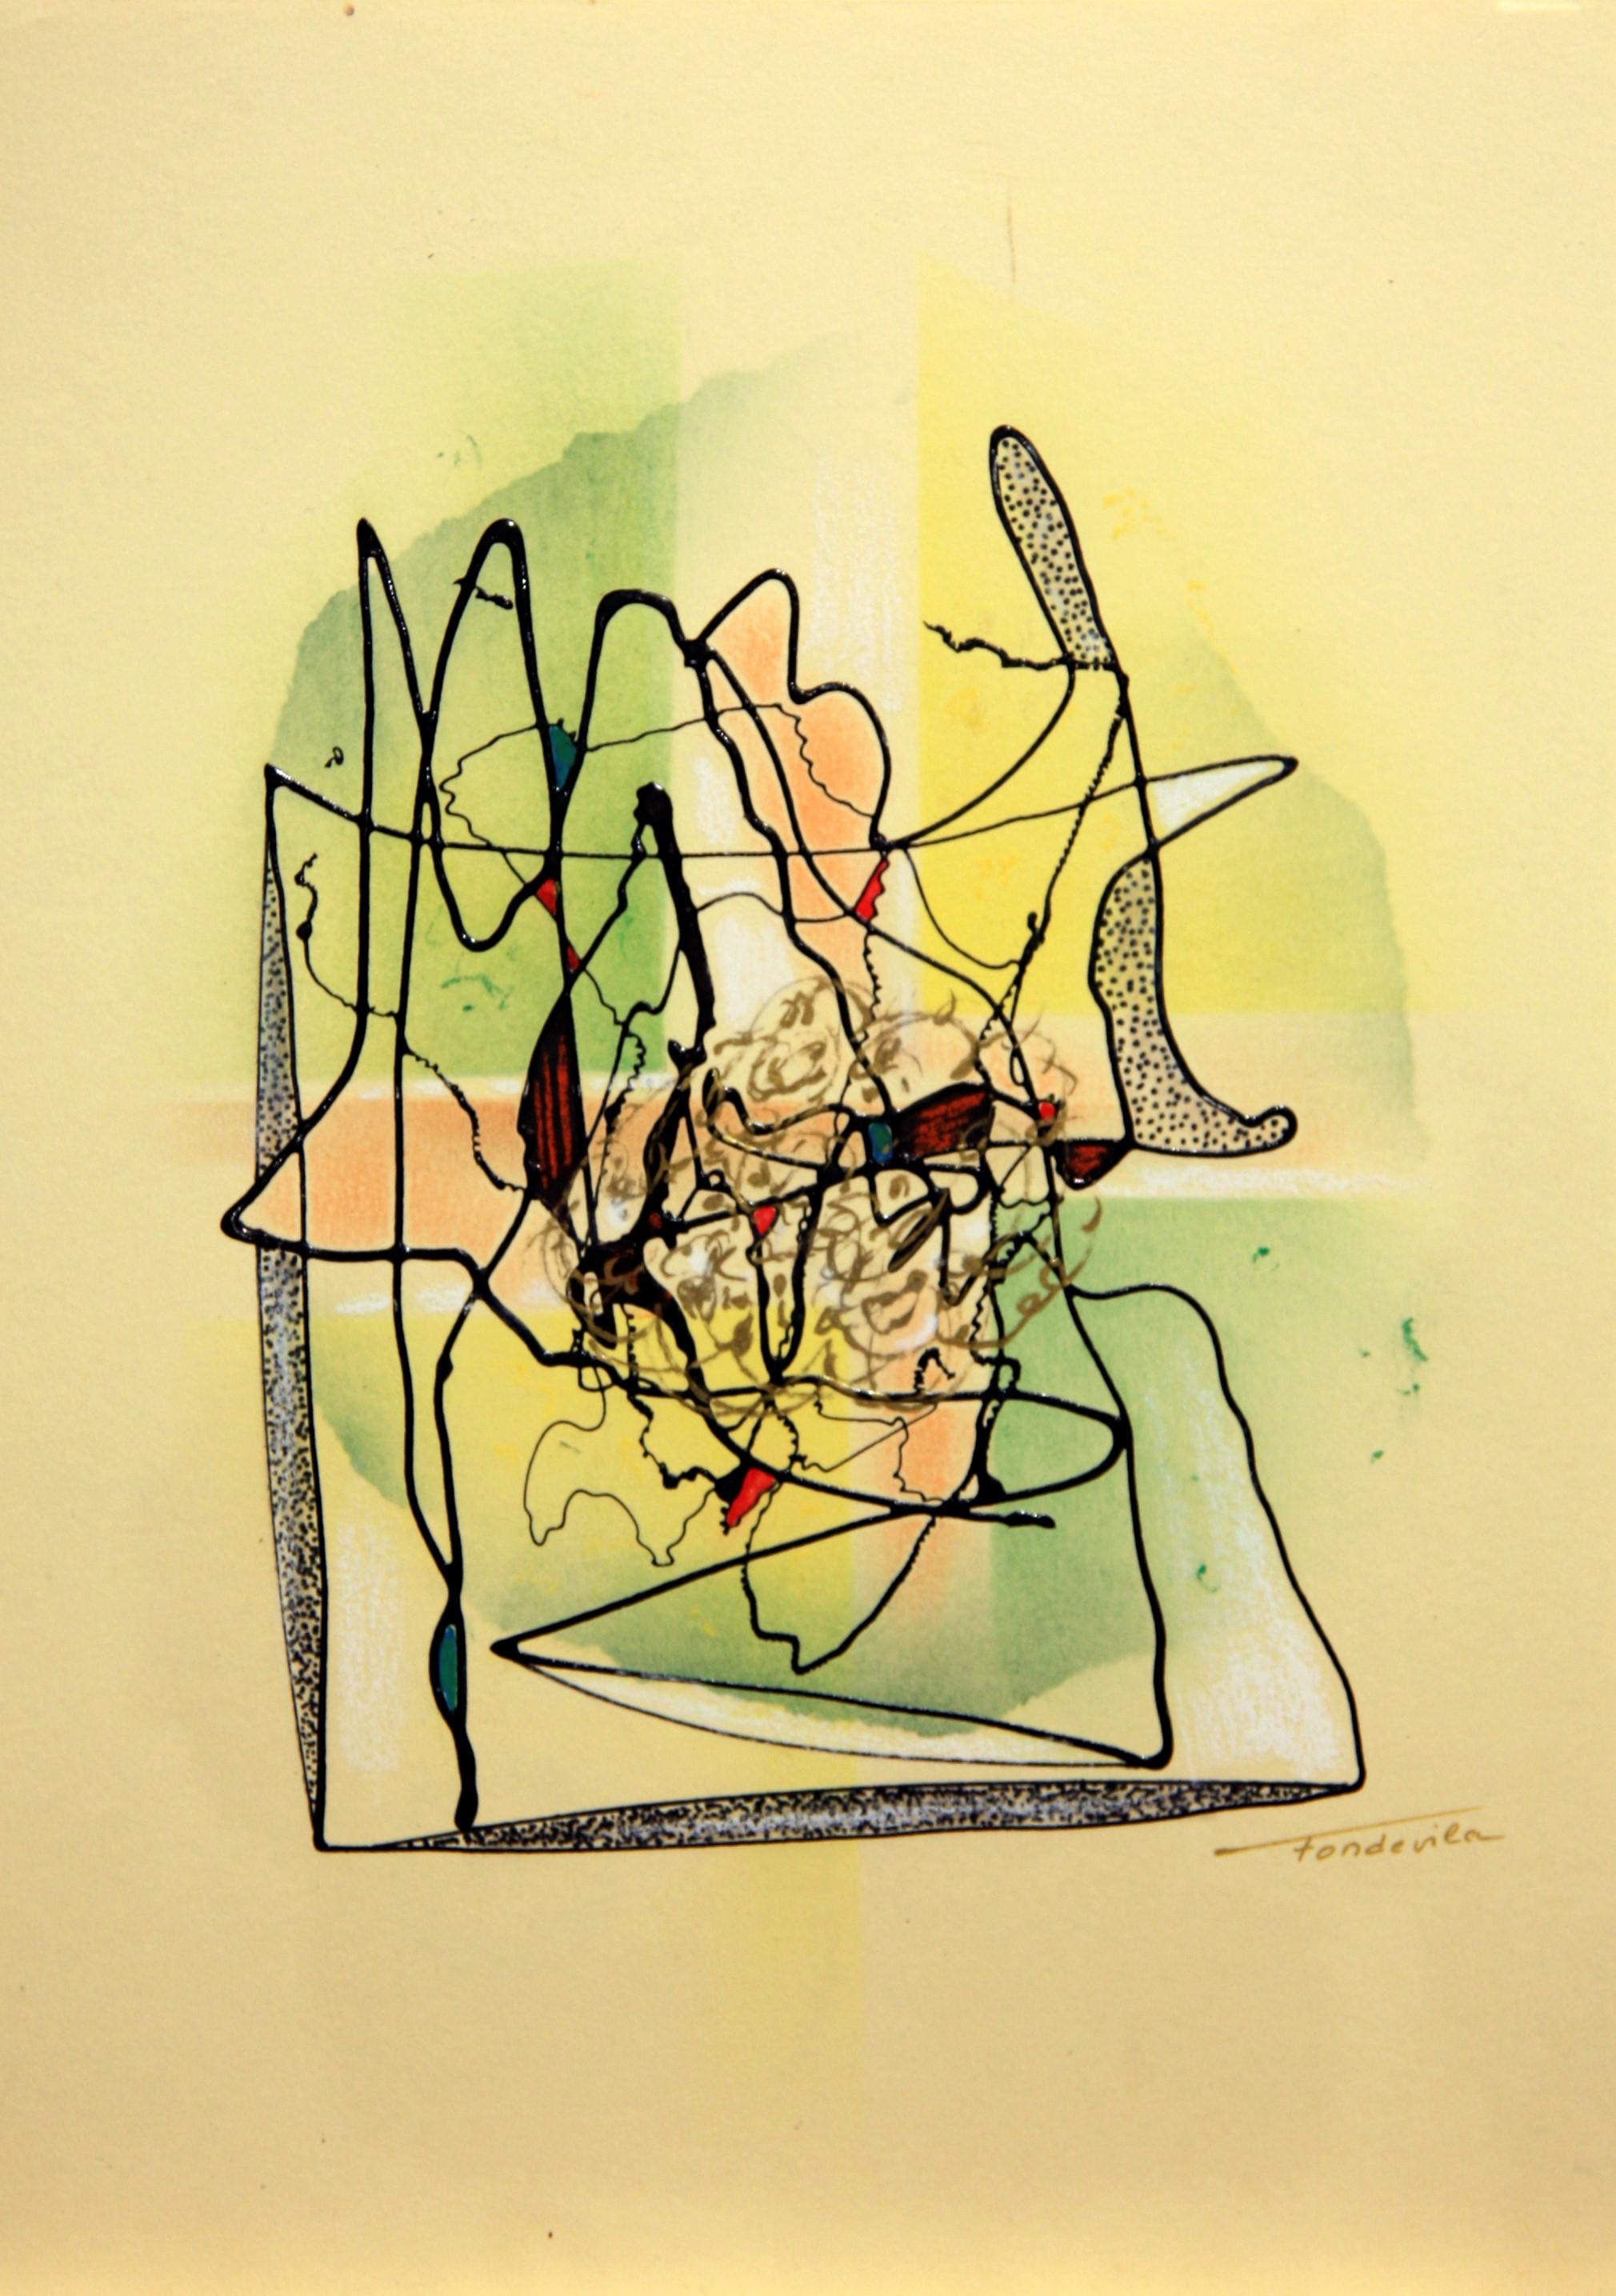 José Antonio Fondevila Abstract Drawing - Labirinto da encrucillada